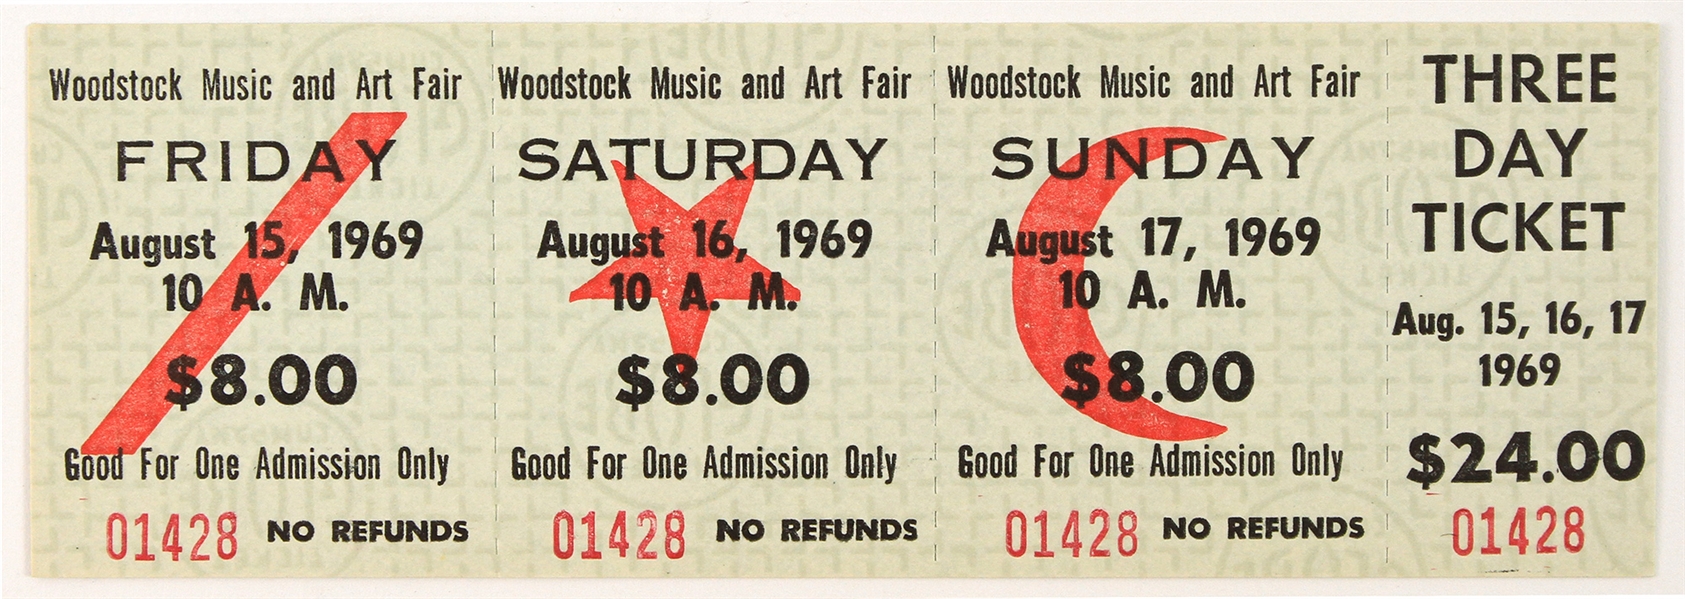 1969 Woodstock Music & Art Fair Full Unused Three Day Ticket